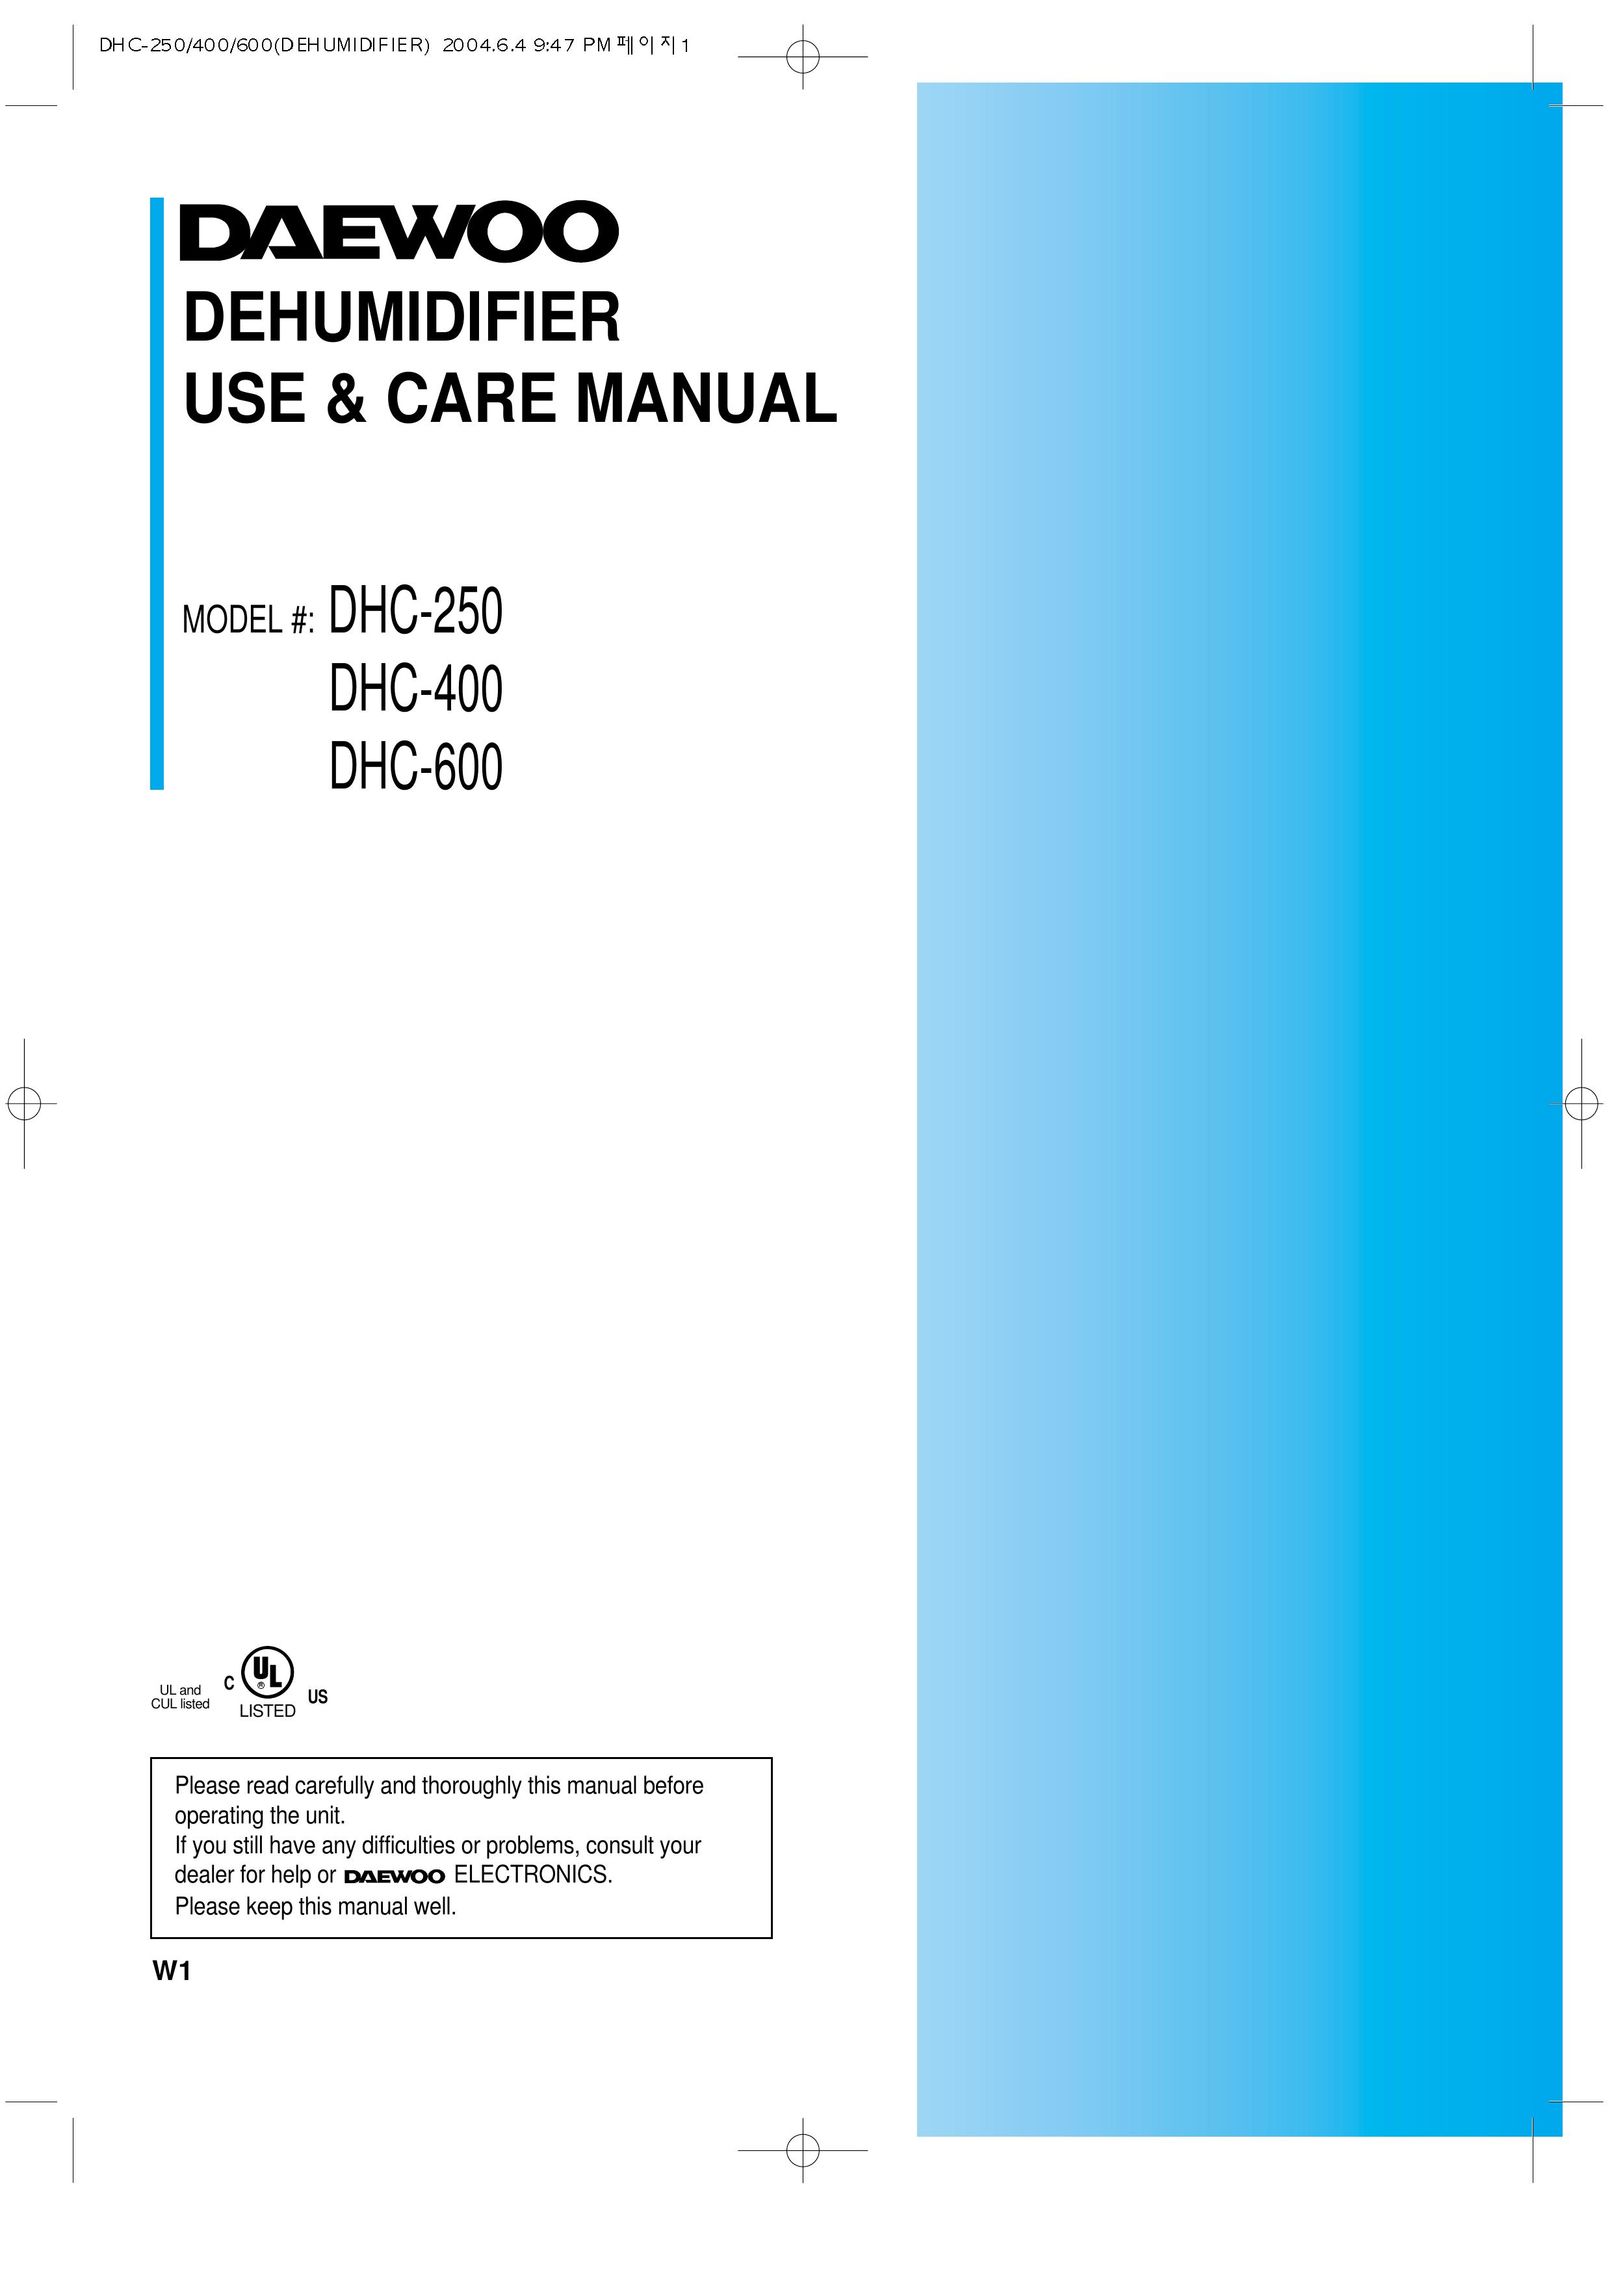 Daewoo DHC-400 Dehumidifier User Manual